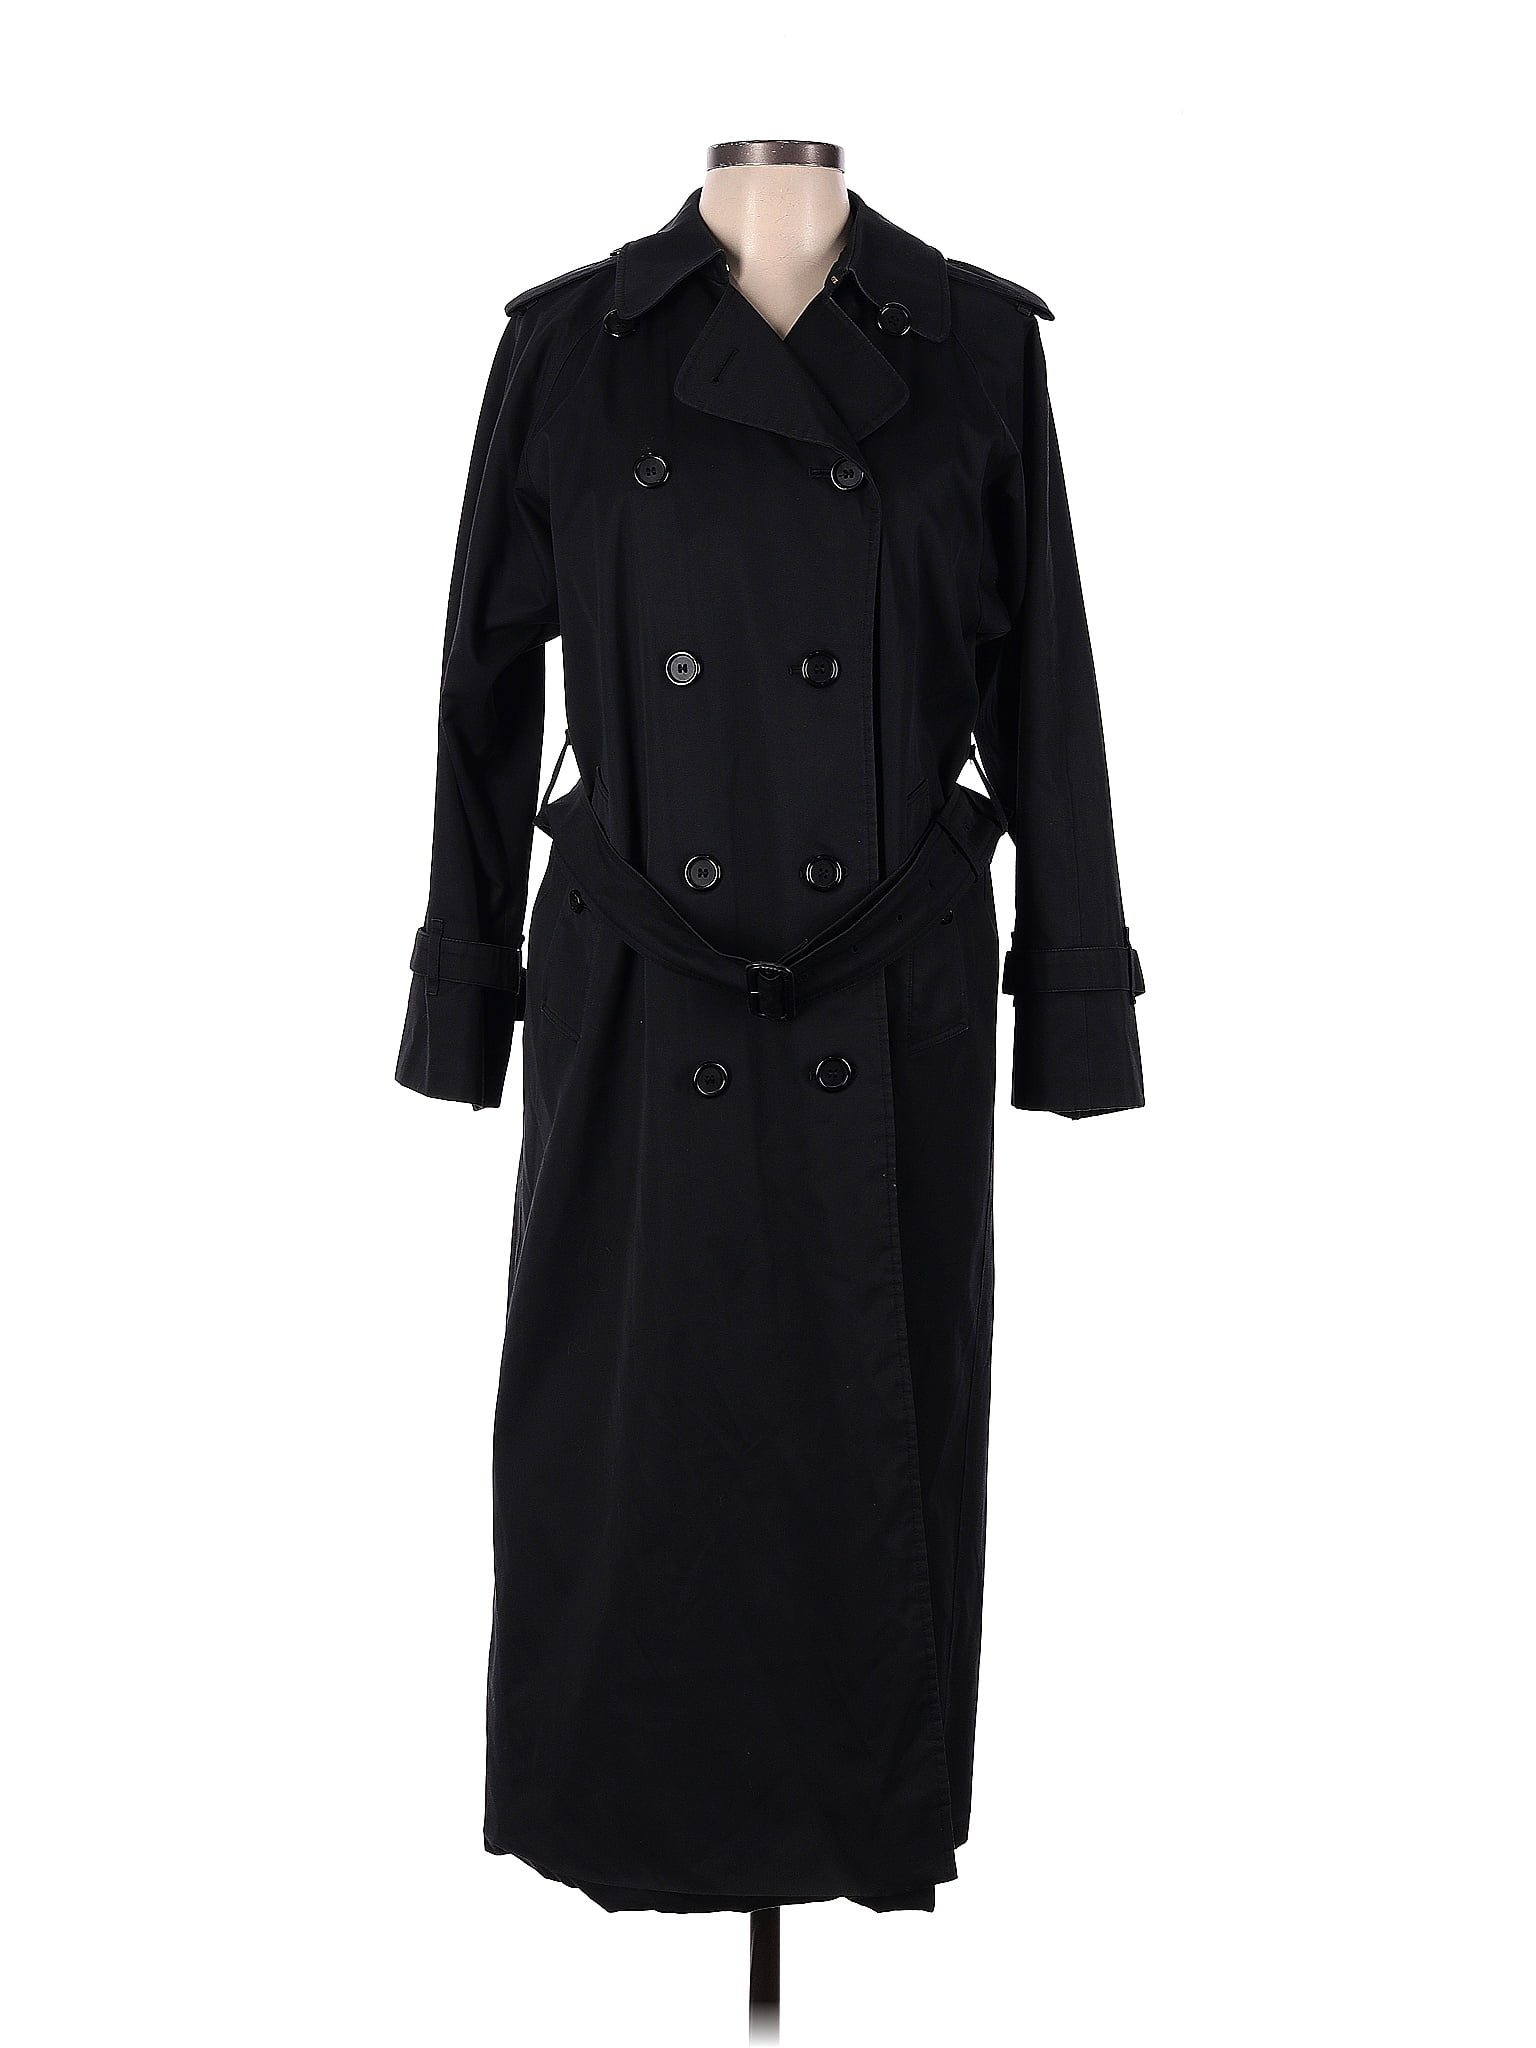 Burberry Solid Black Vintage Trenchcoat Size L - 69% off | thredUP